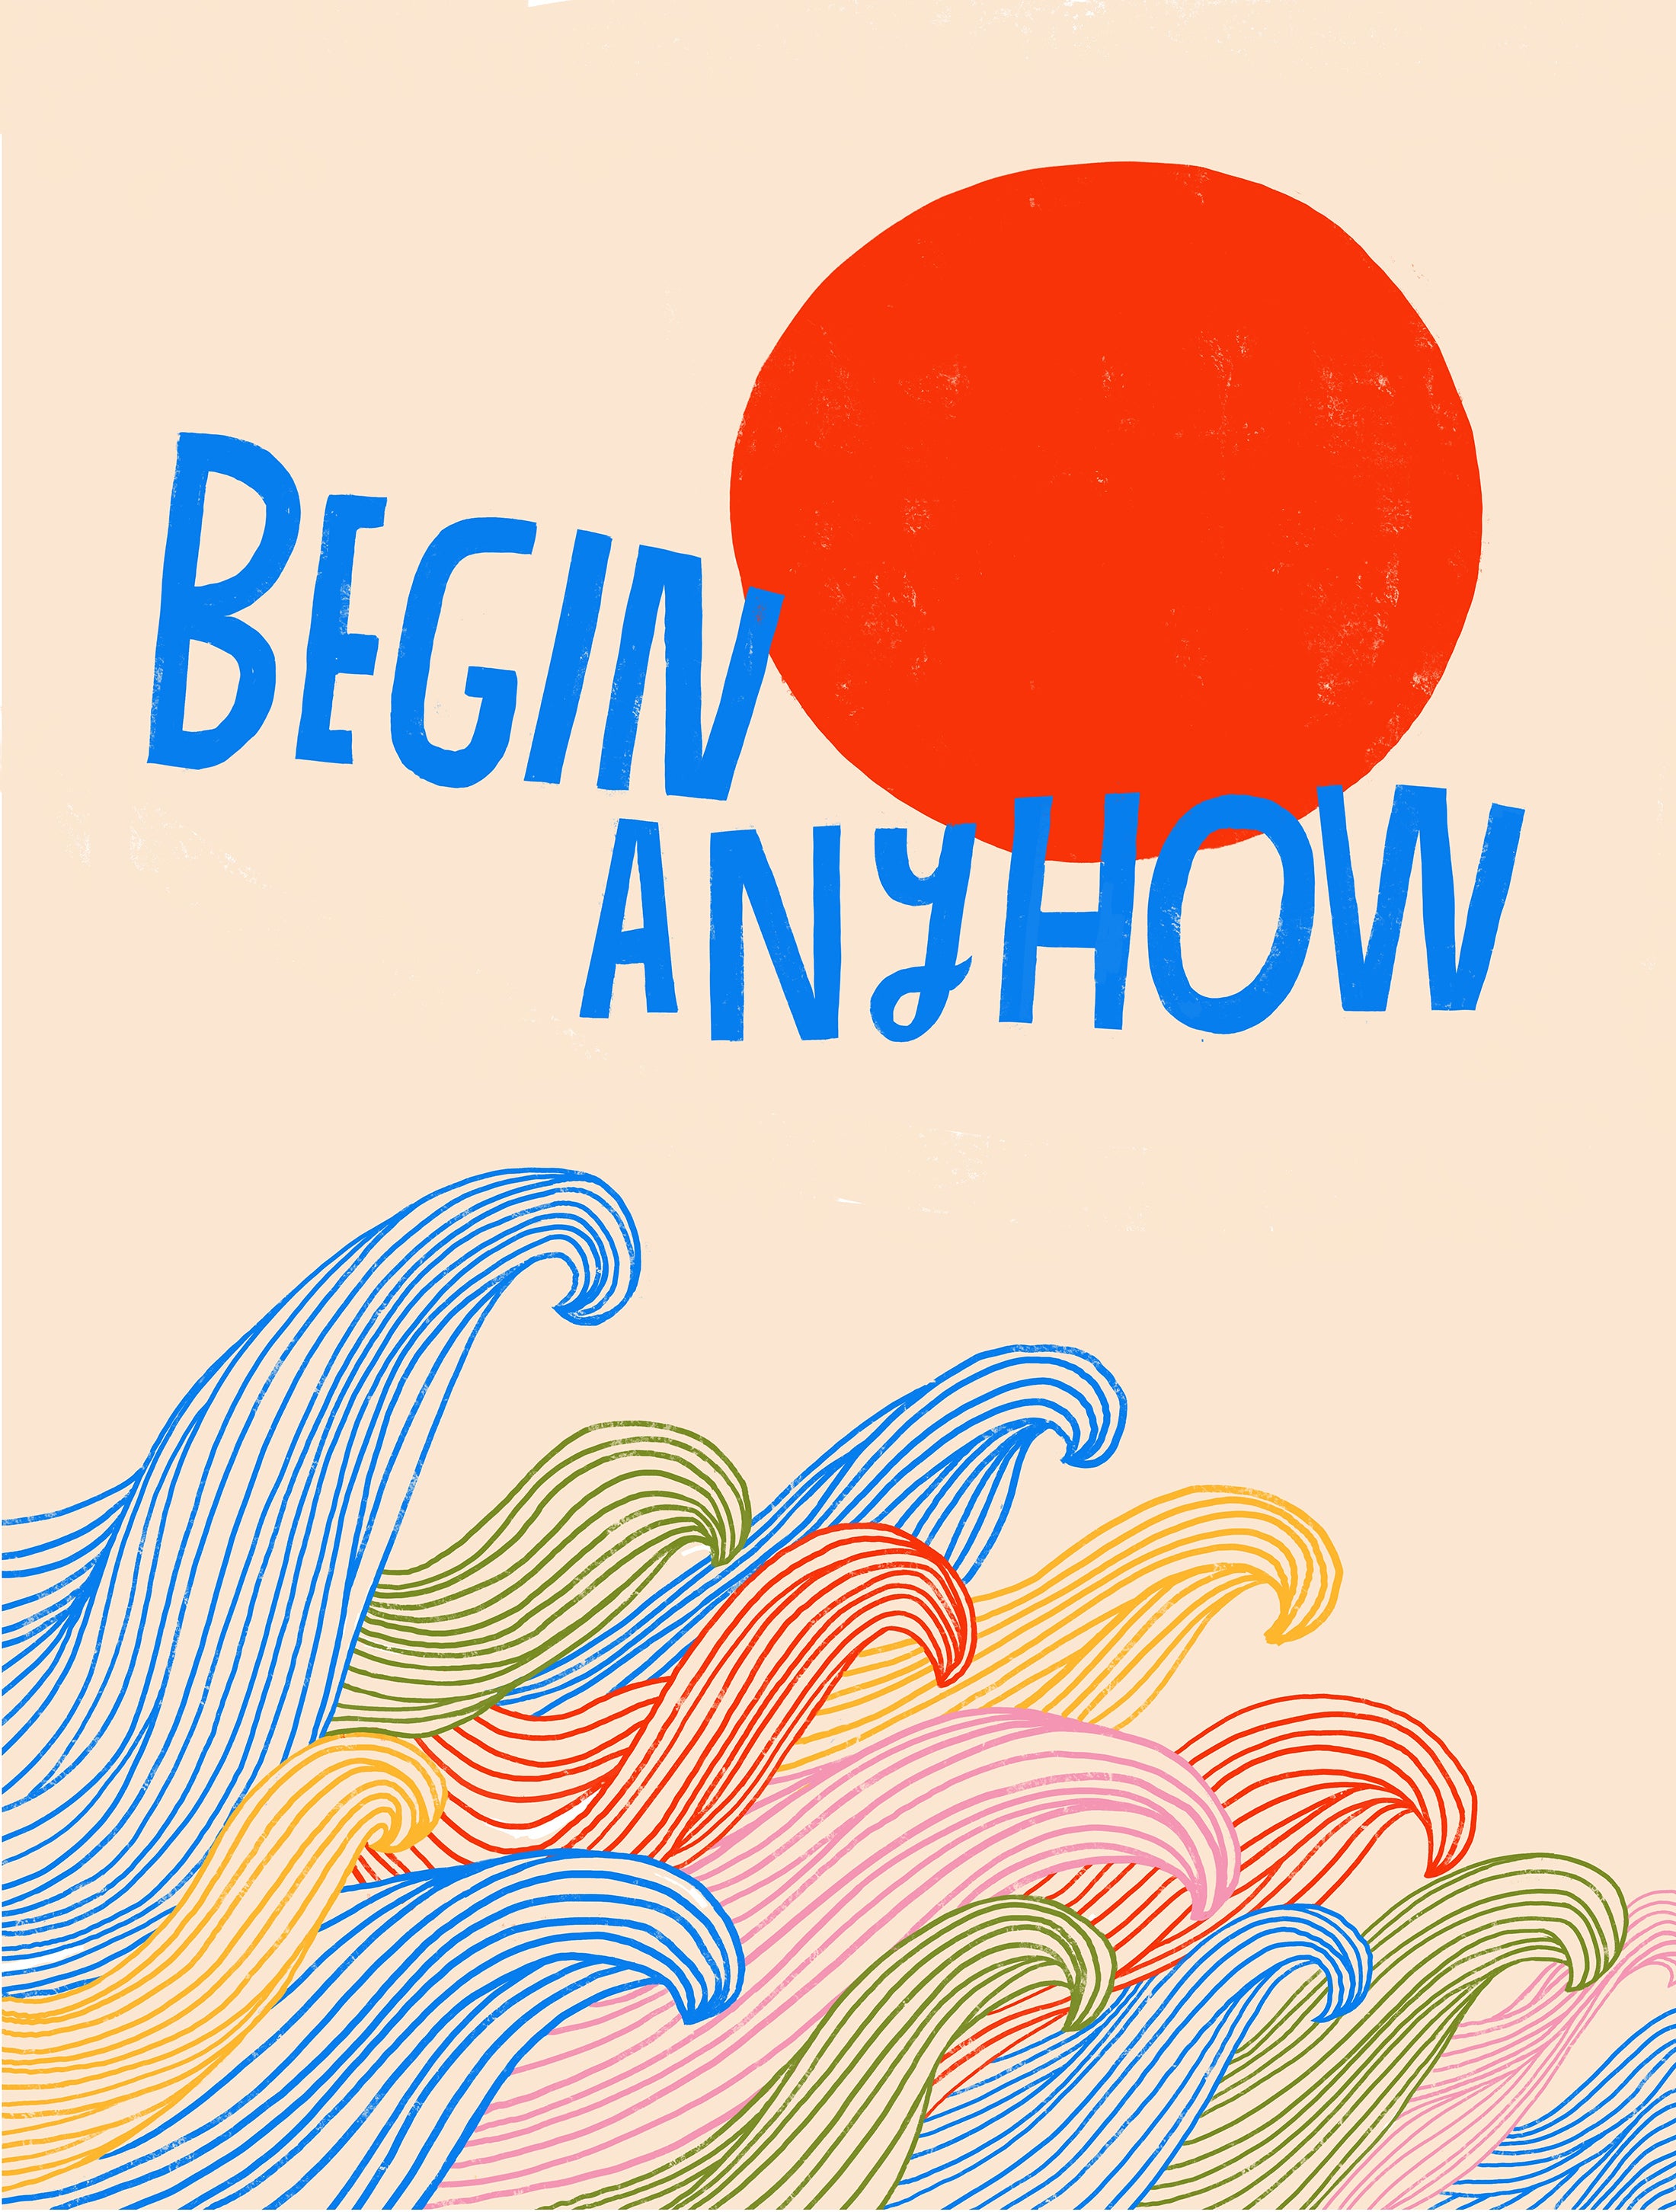 Begin Anyhow - Art Print